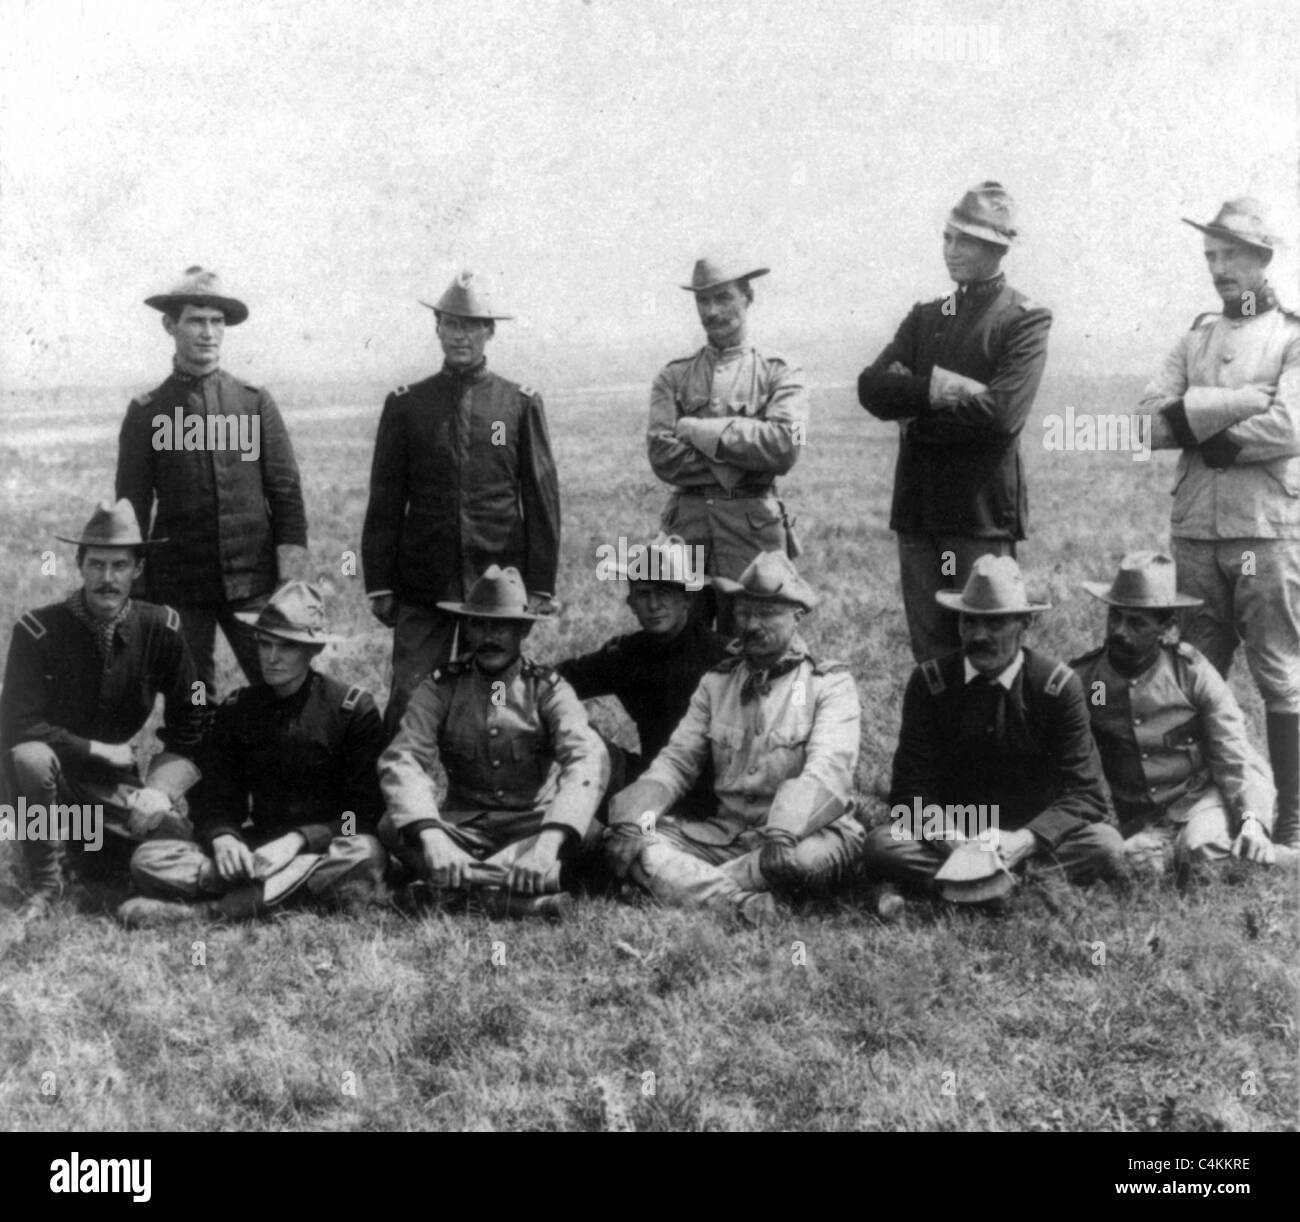 Le président Roosevelt en tant que soldat - avec ses 'Rough Rider' camarades, pendant la guerre de Cuba. 1902 Banque D'Images